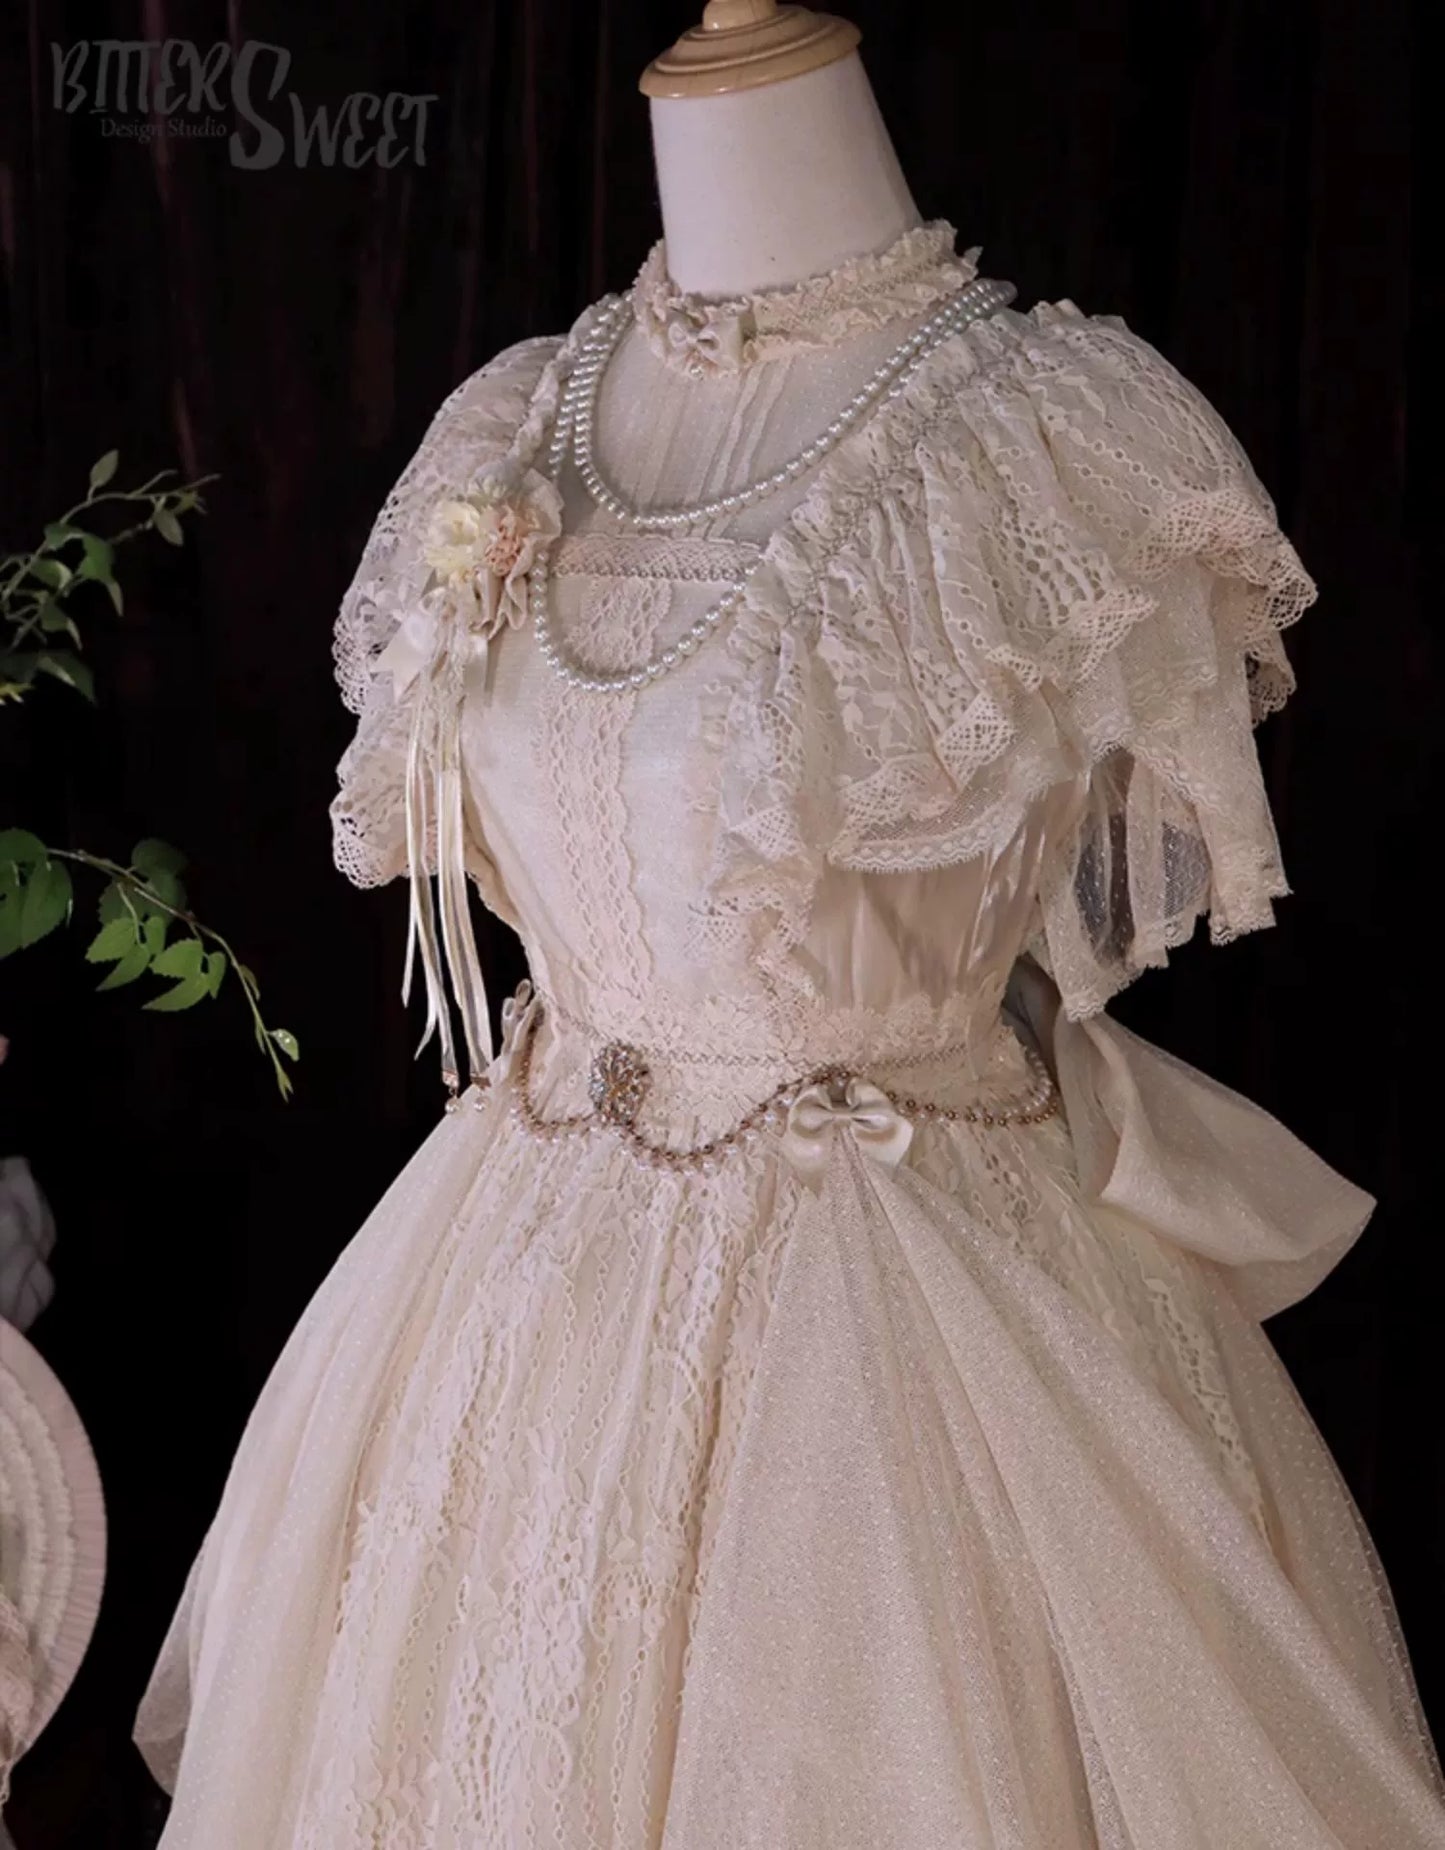 Cashew Flower lace antique style dress